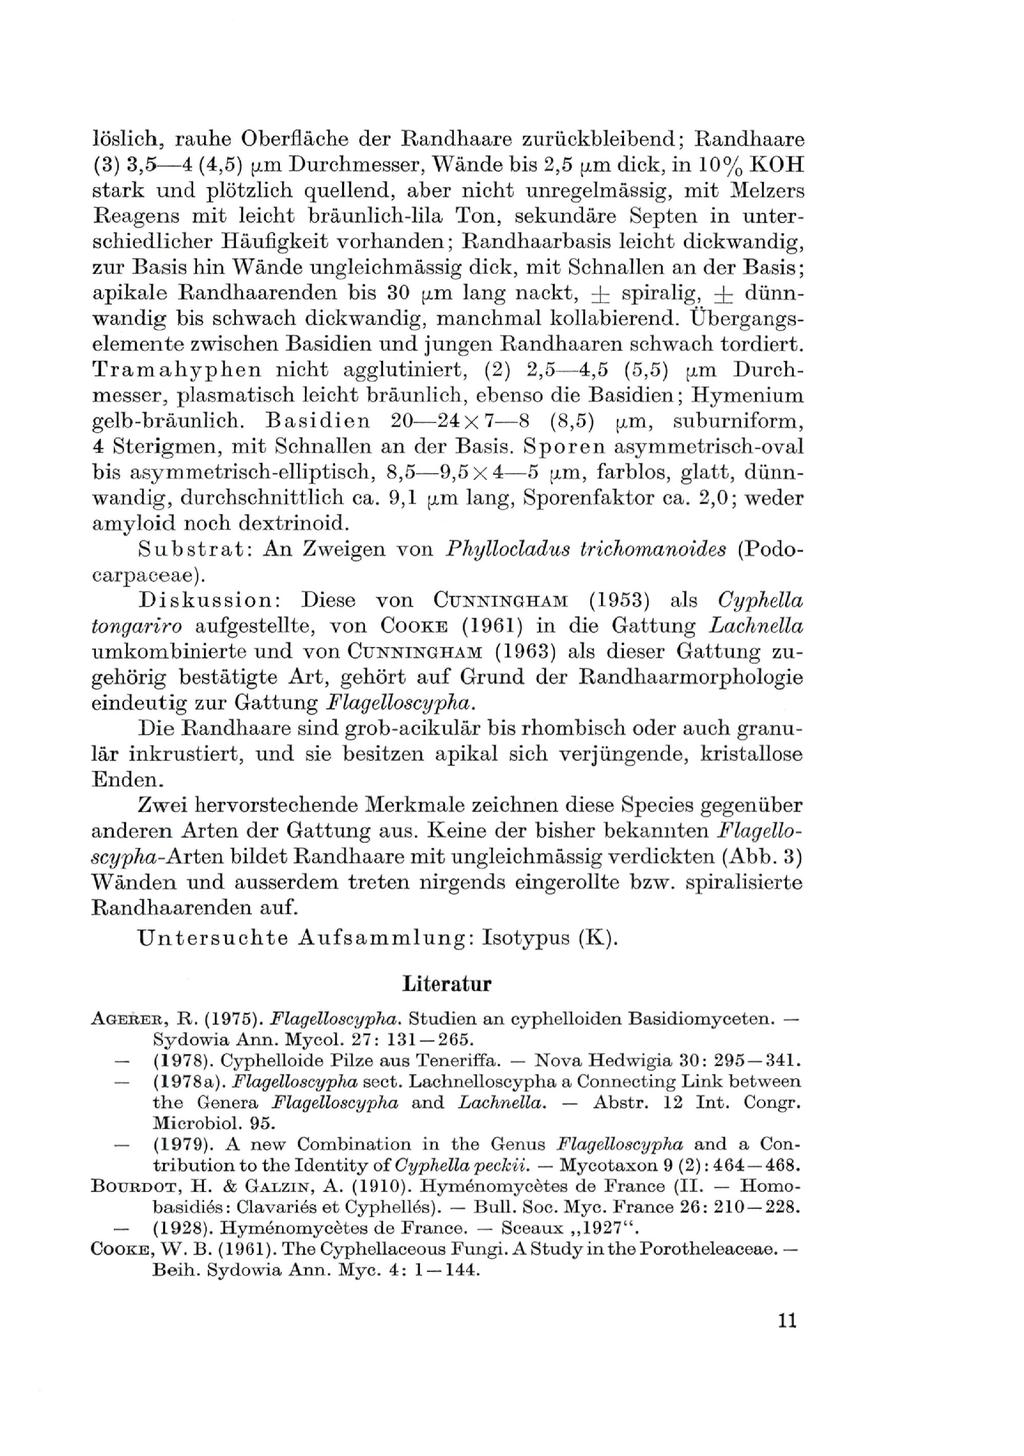 Verlag Ferdinand Berger & Söhne Ges.m.b.H., Horn, Austria, download unter www.biologiezentrum.a löslich, rauhe Oberfläche der Randhaare zurückbleibend; Randhaare (3) 3,5 4 (4,5) y.